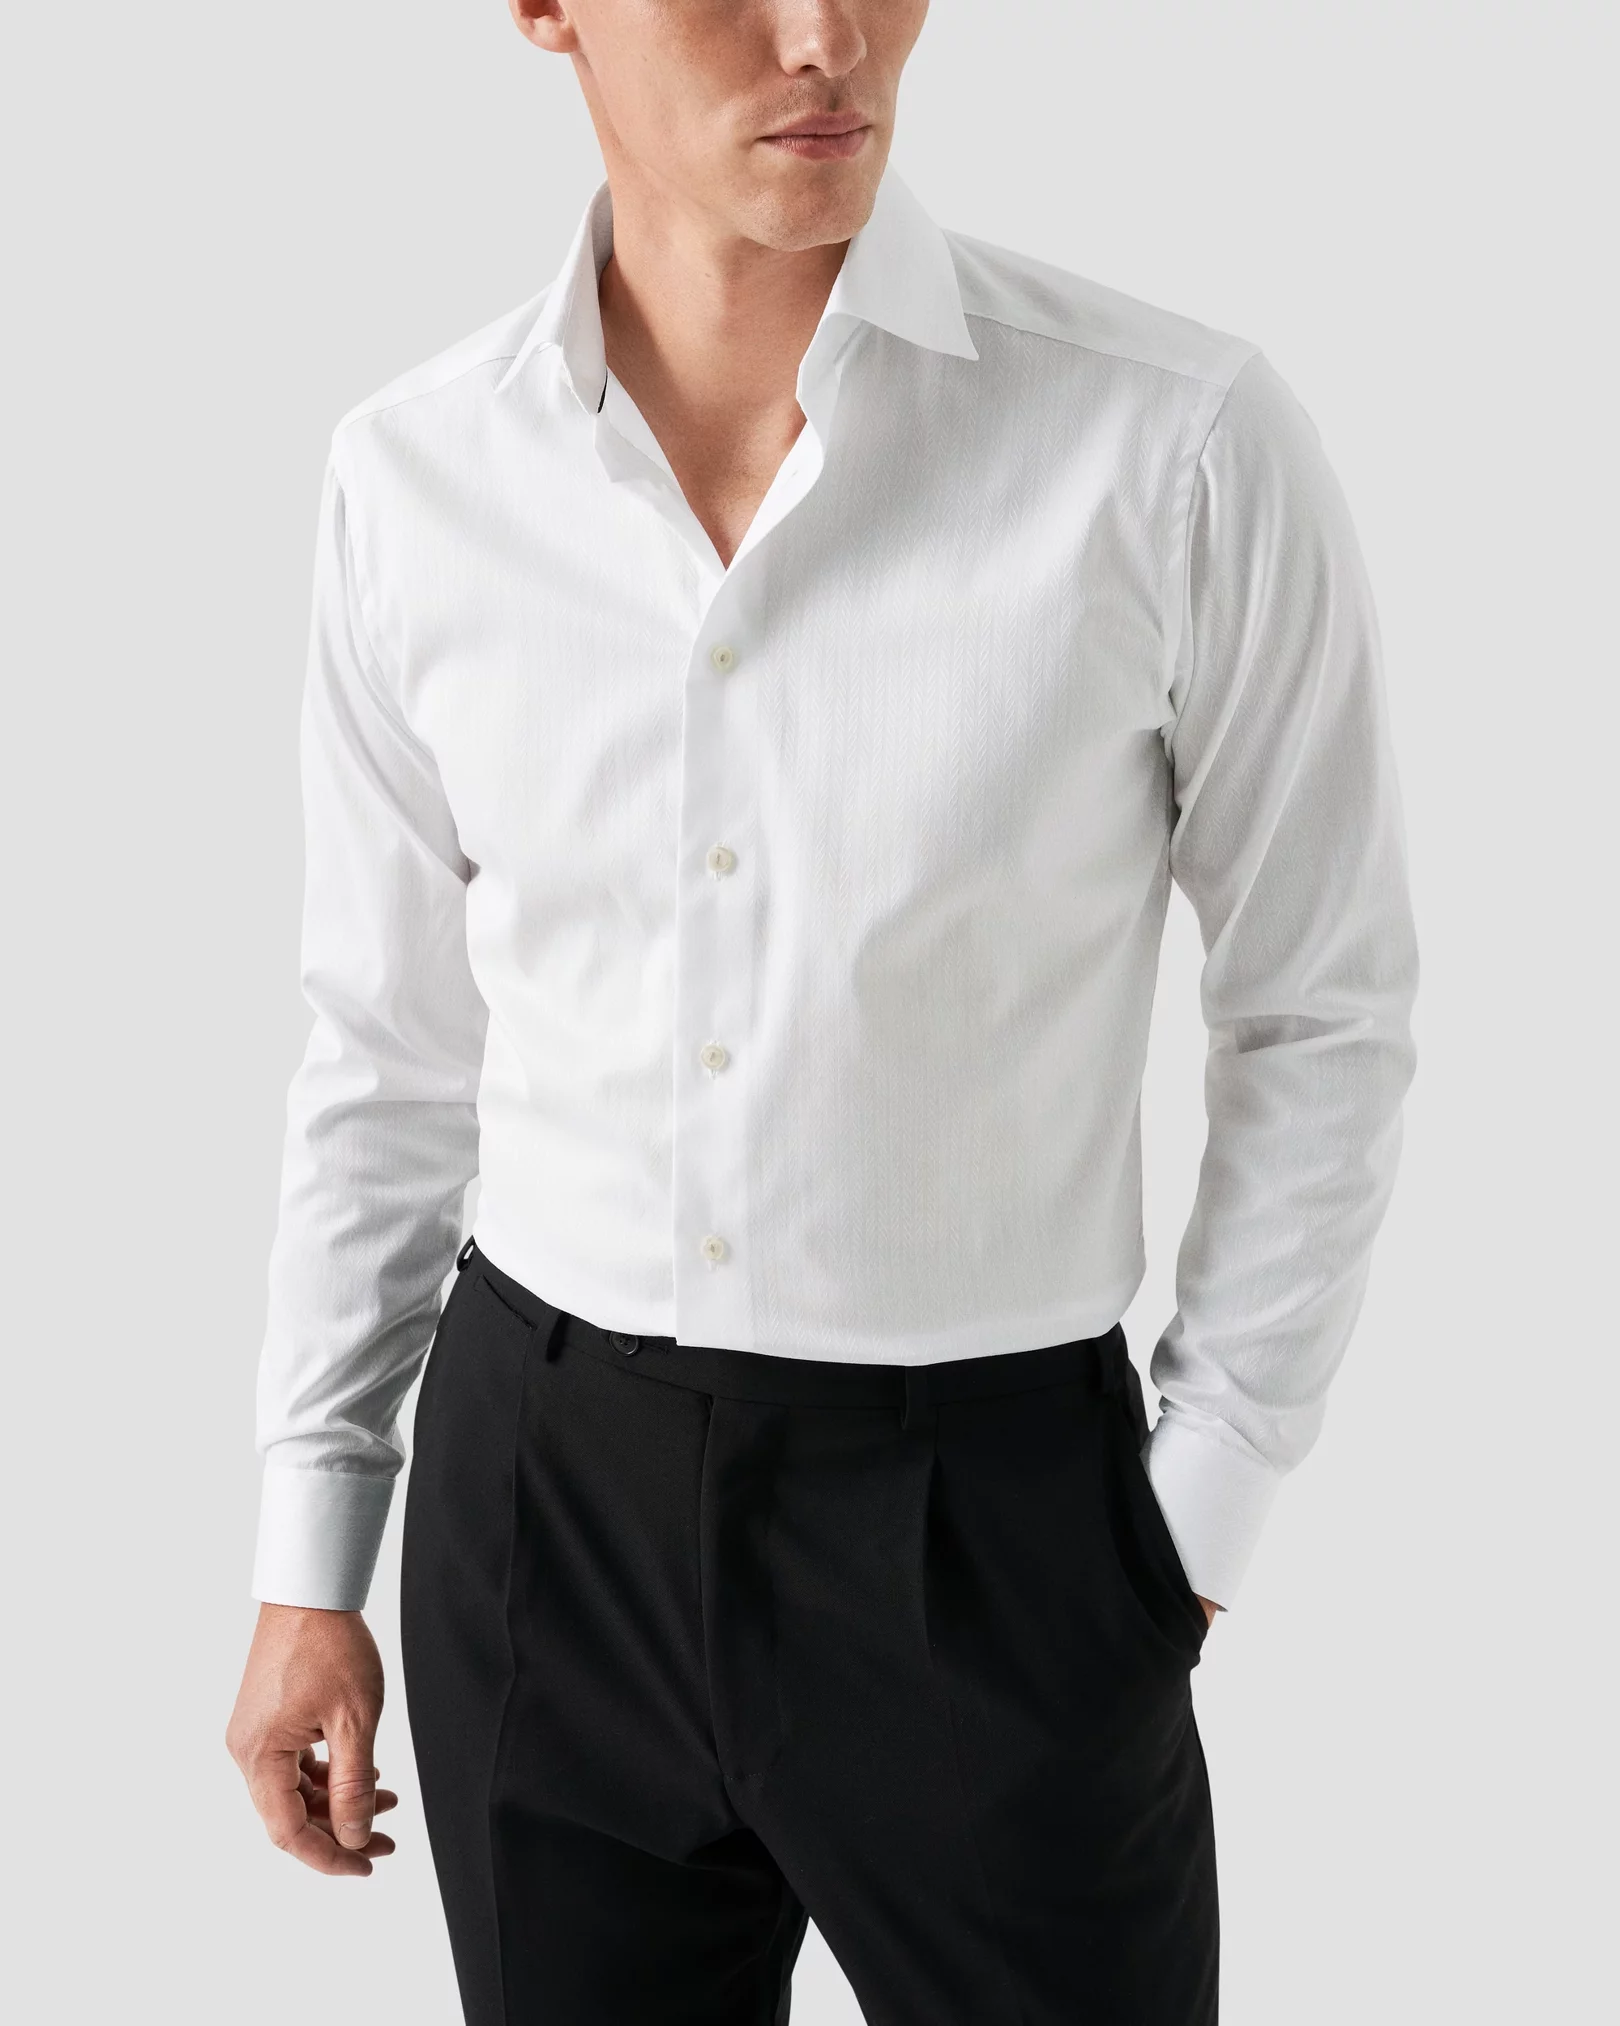 Eton - white textured herringbone shirt